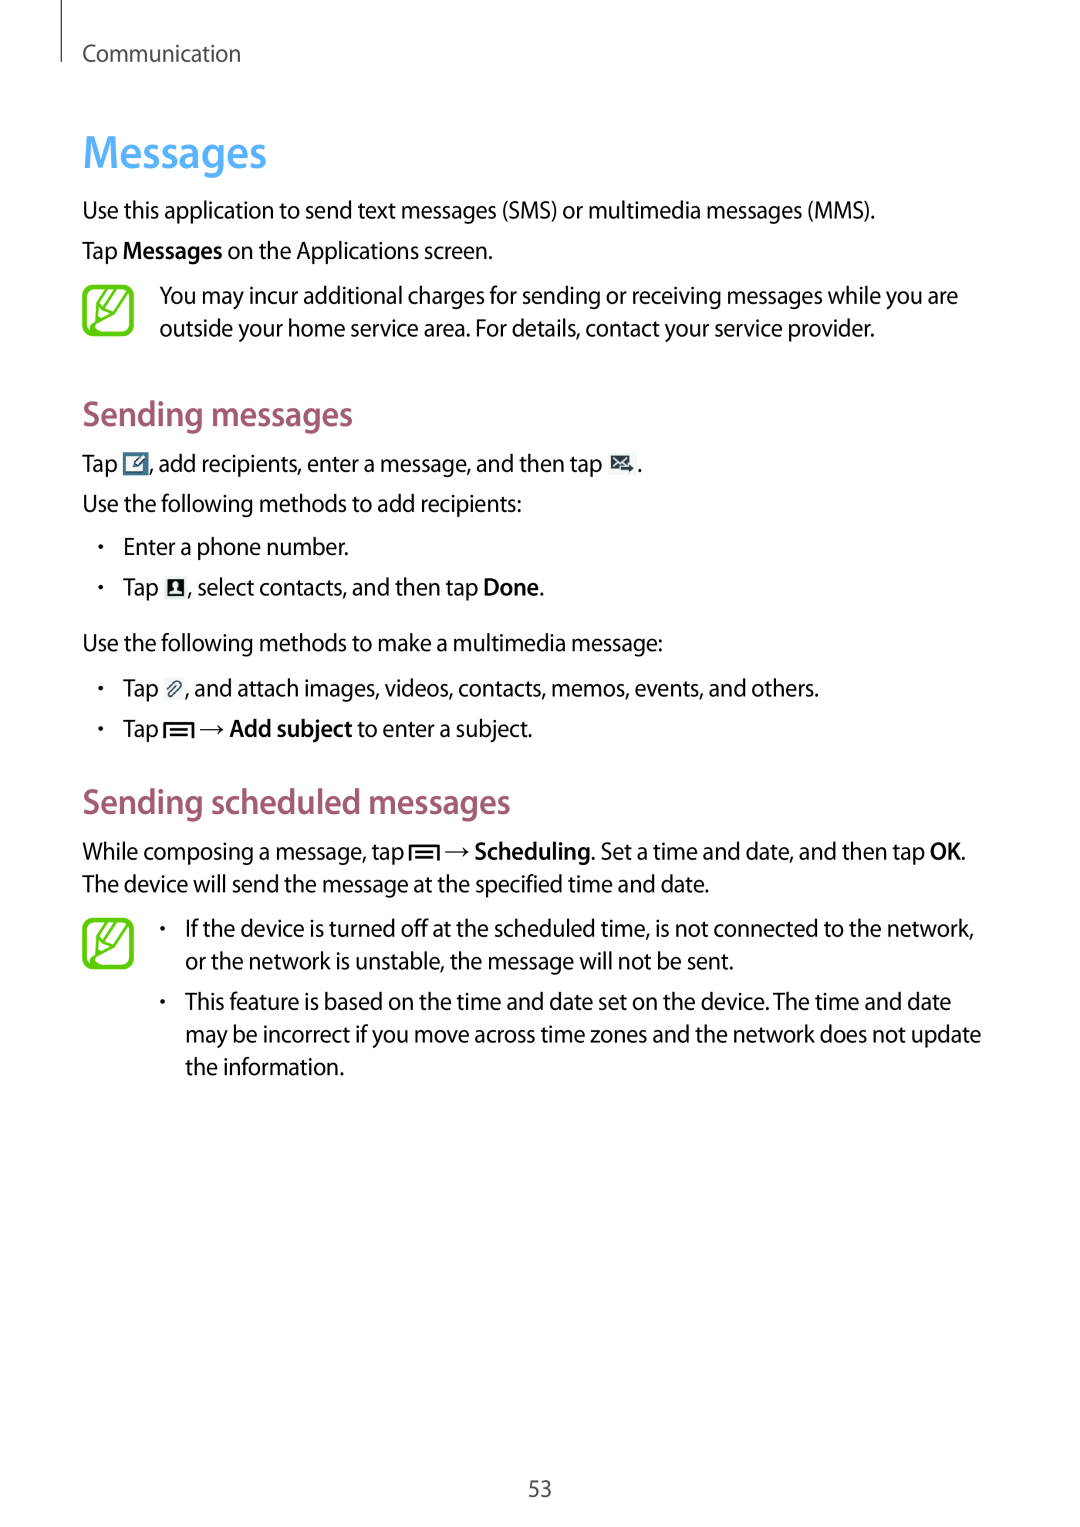 Samsung SM-T3150ZWAPAN, SM-T3150ZWAVD2 manual Messages, Sending messages, Sending scheduled messages, Communication 